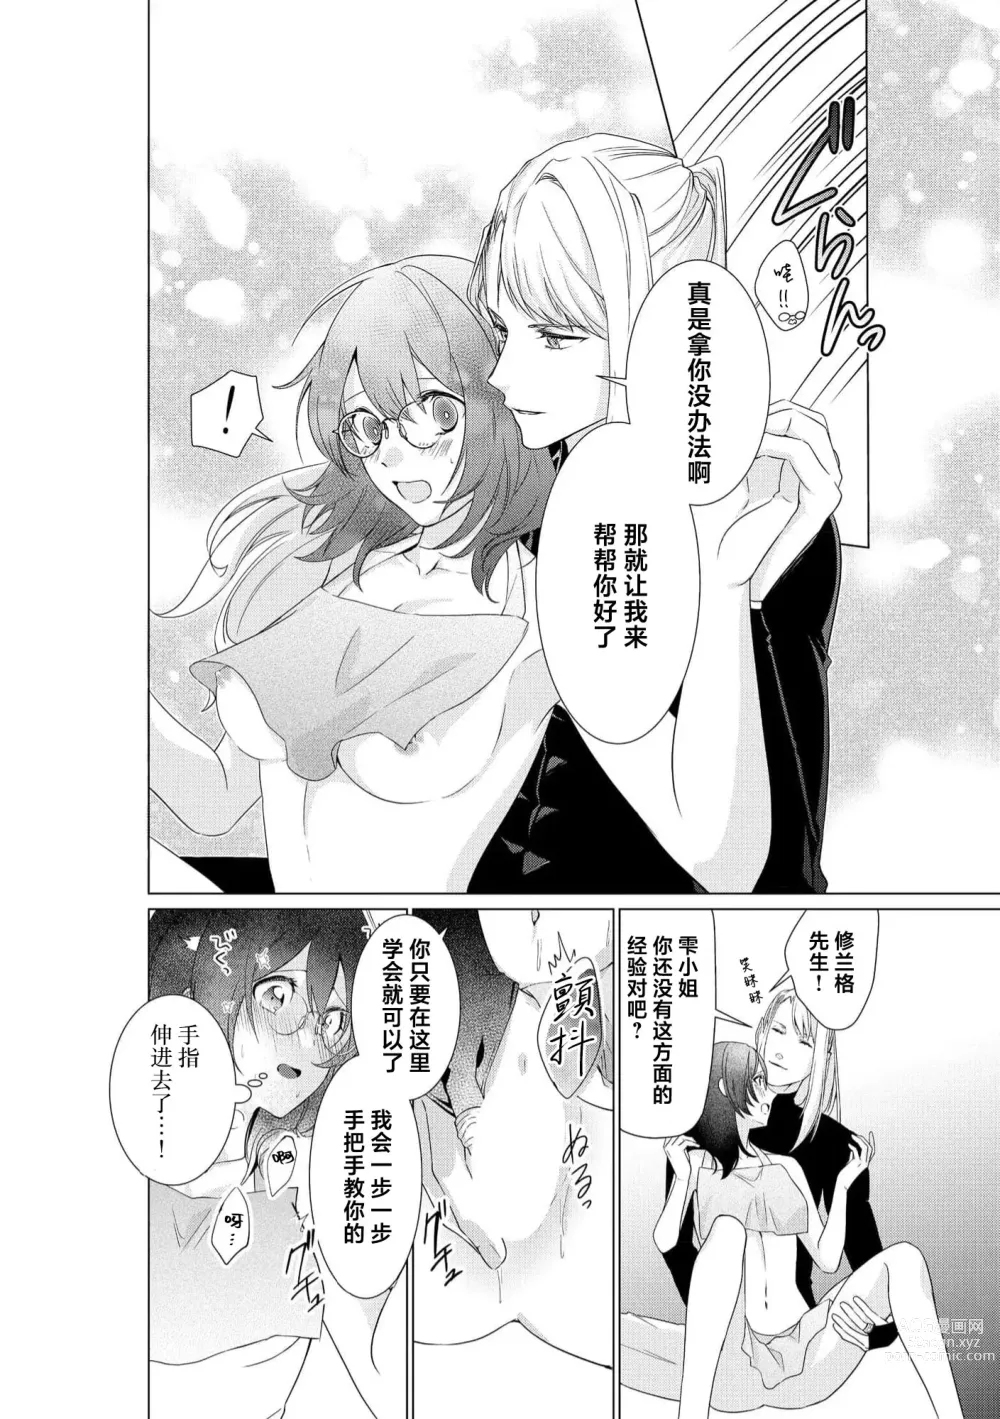 Page 26 of manga 白蛇大人的溺爱试验~苦命OL在异世界缔结了淫荡契约…~